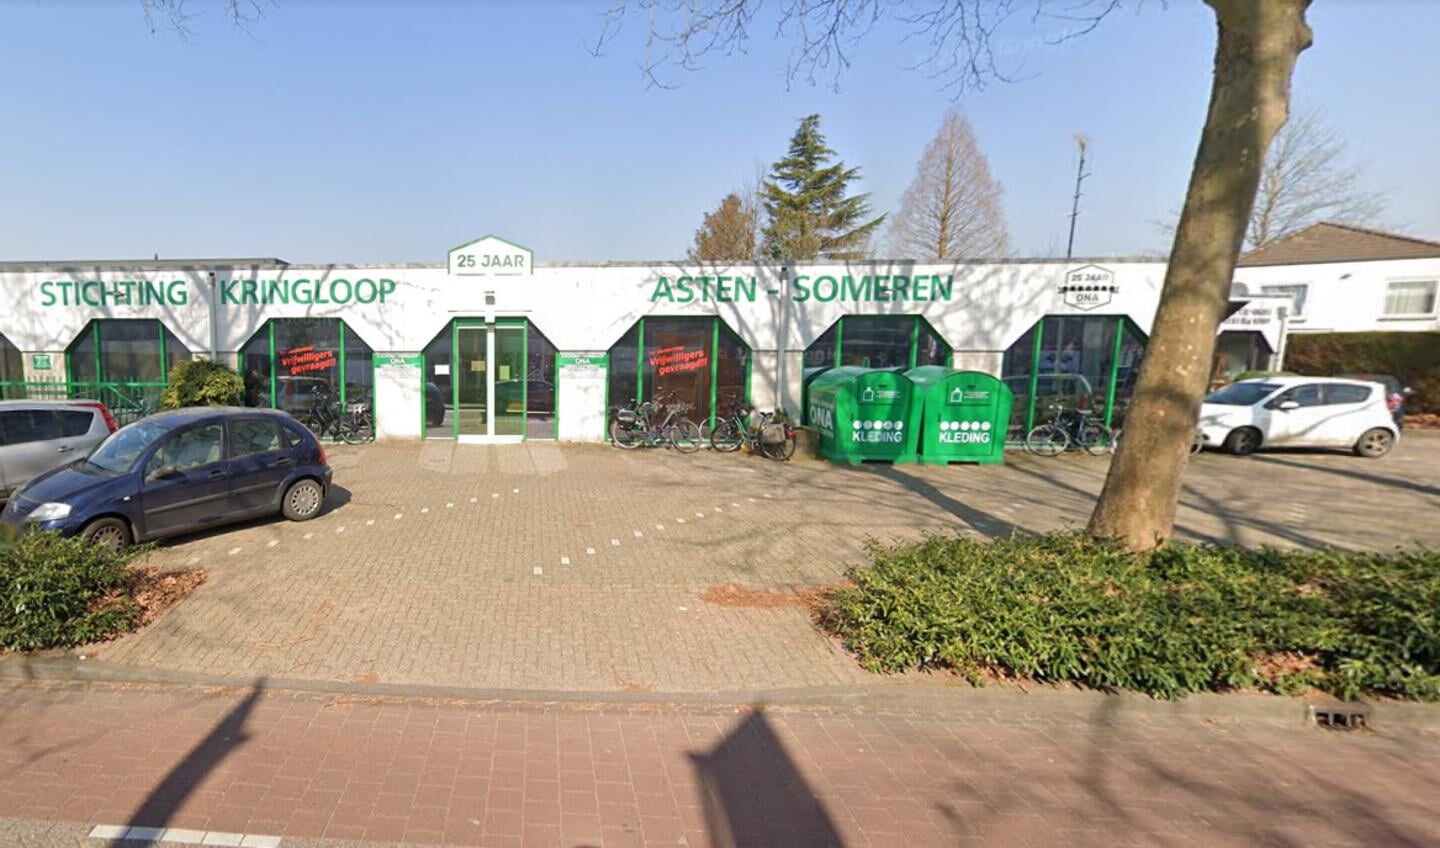 Kringloopwinkel Ona aan de Industrielaan in Asten. (Bron: Google Street View)